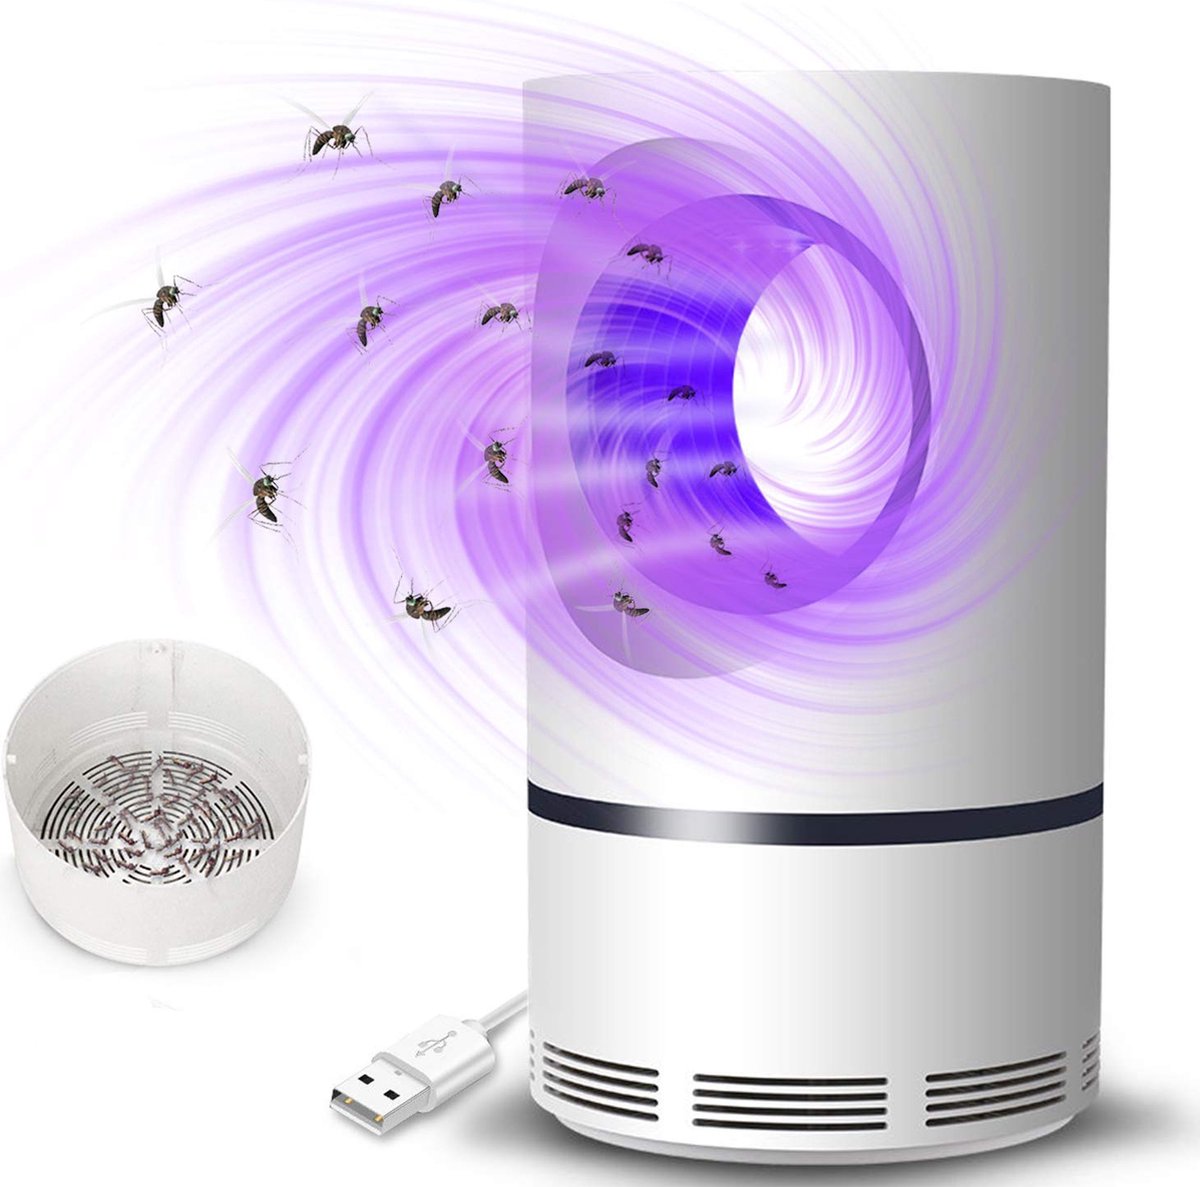 Deskundige merk op vergeven HaverCo muggenlamp - Tegen muggen - 5 Watt - USB aansluiting - Incl.  aanzuig ventilator | bol.com